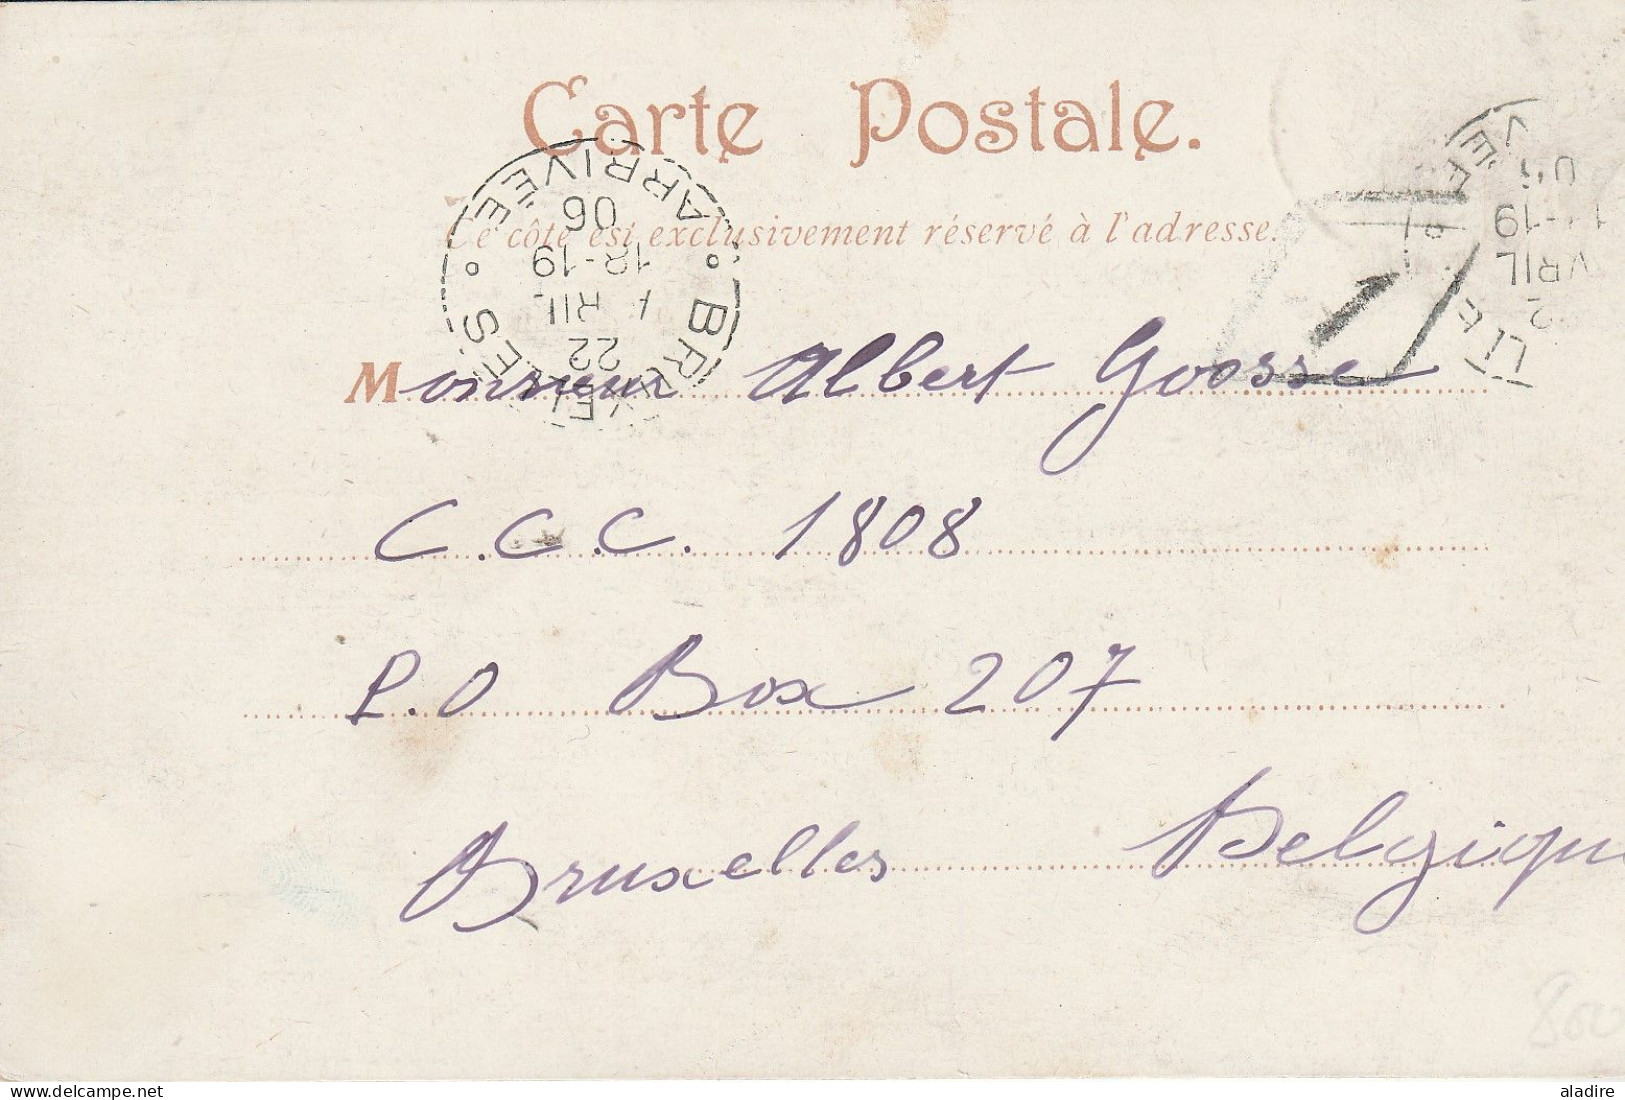 1896 - 1968 - Océanie Polynésie française - collection de 11 cartes, enveloppes et entier - histoire postale - 22 scans